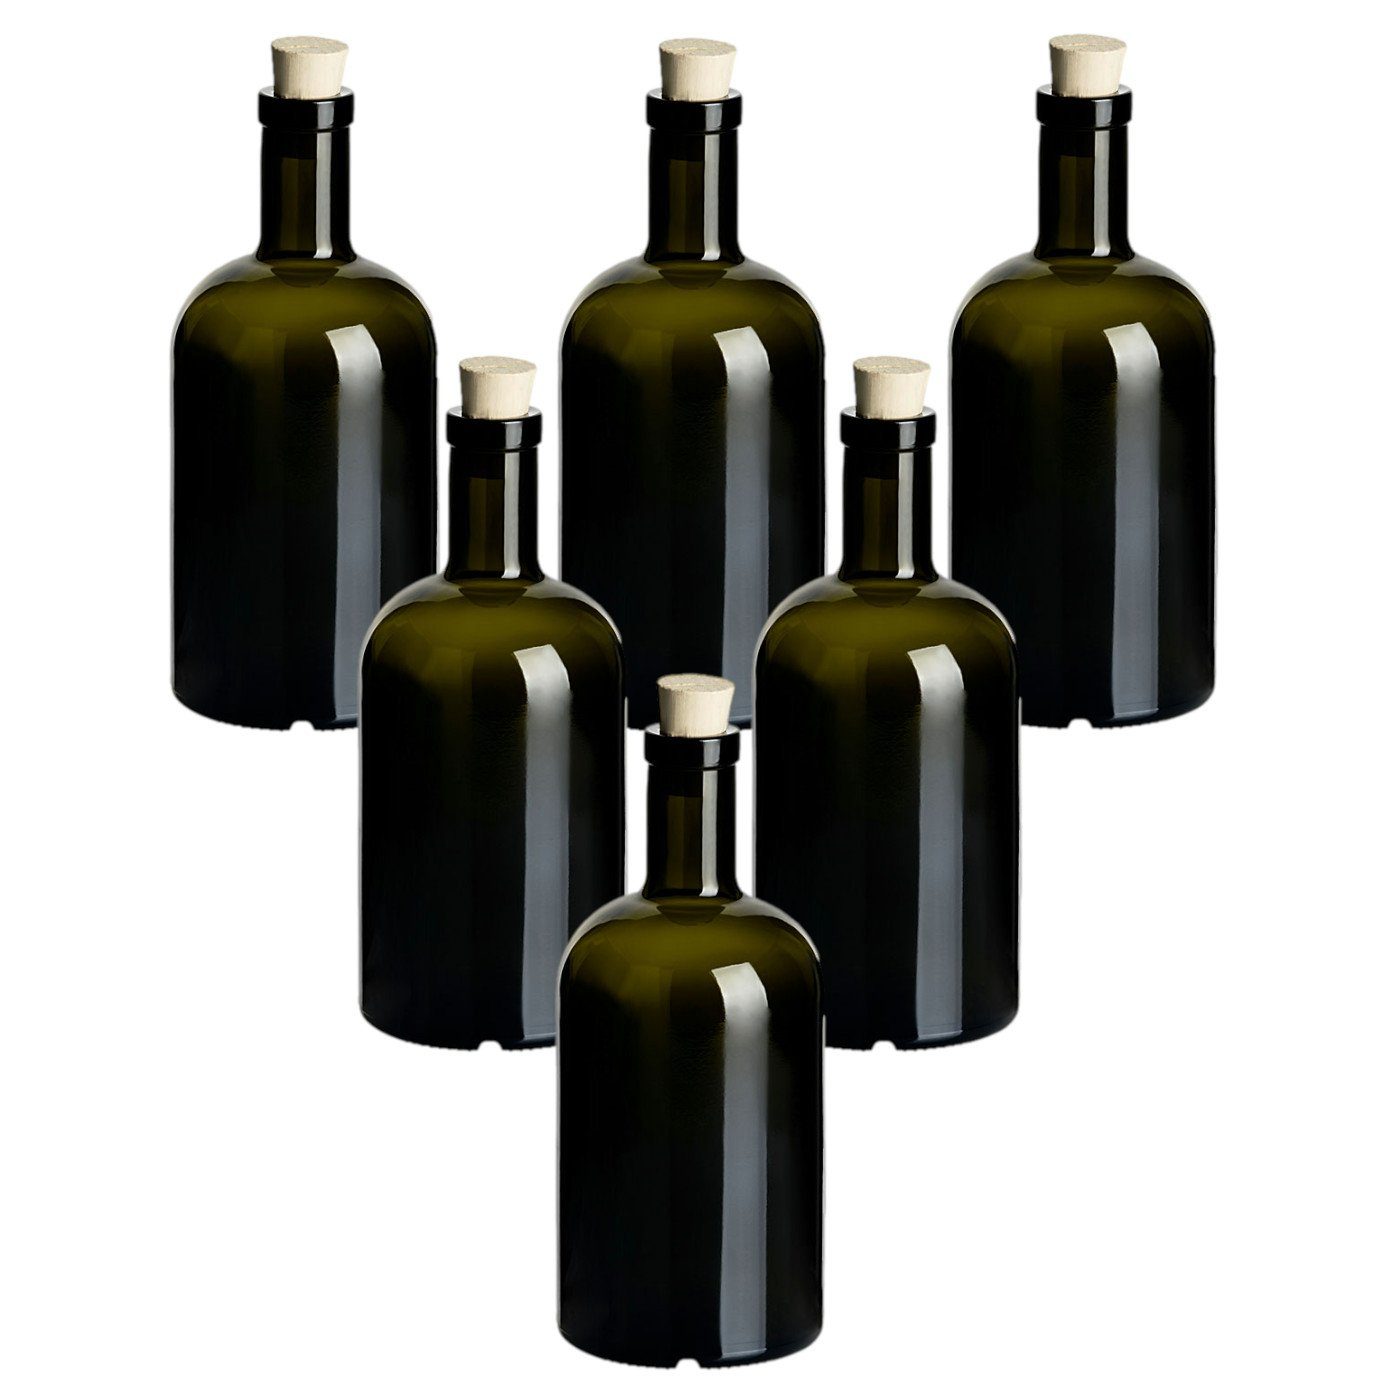 gouveo Trinkflasche Glasflaschen “Klassik” mit Korken - Runde Flasche aus Glas, 6er Set 500ml, Antik, Spitzkorken Dunkelgrün-Spitzkorken